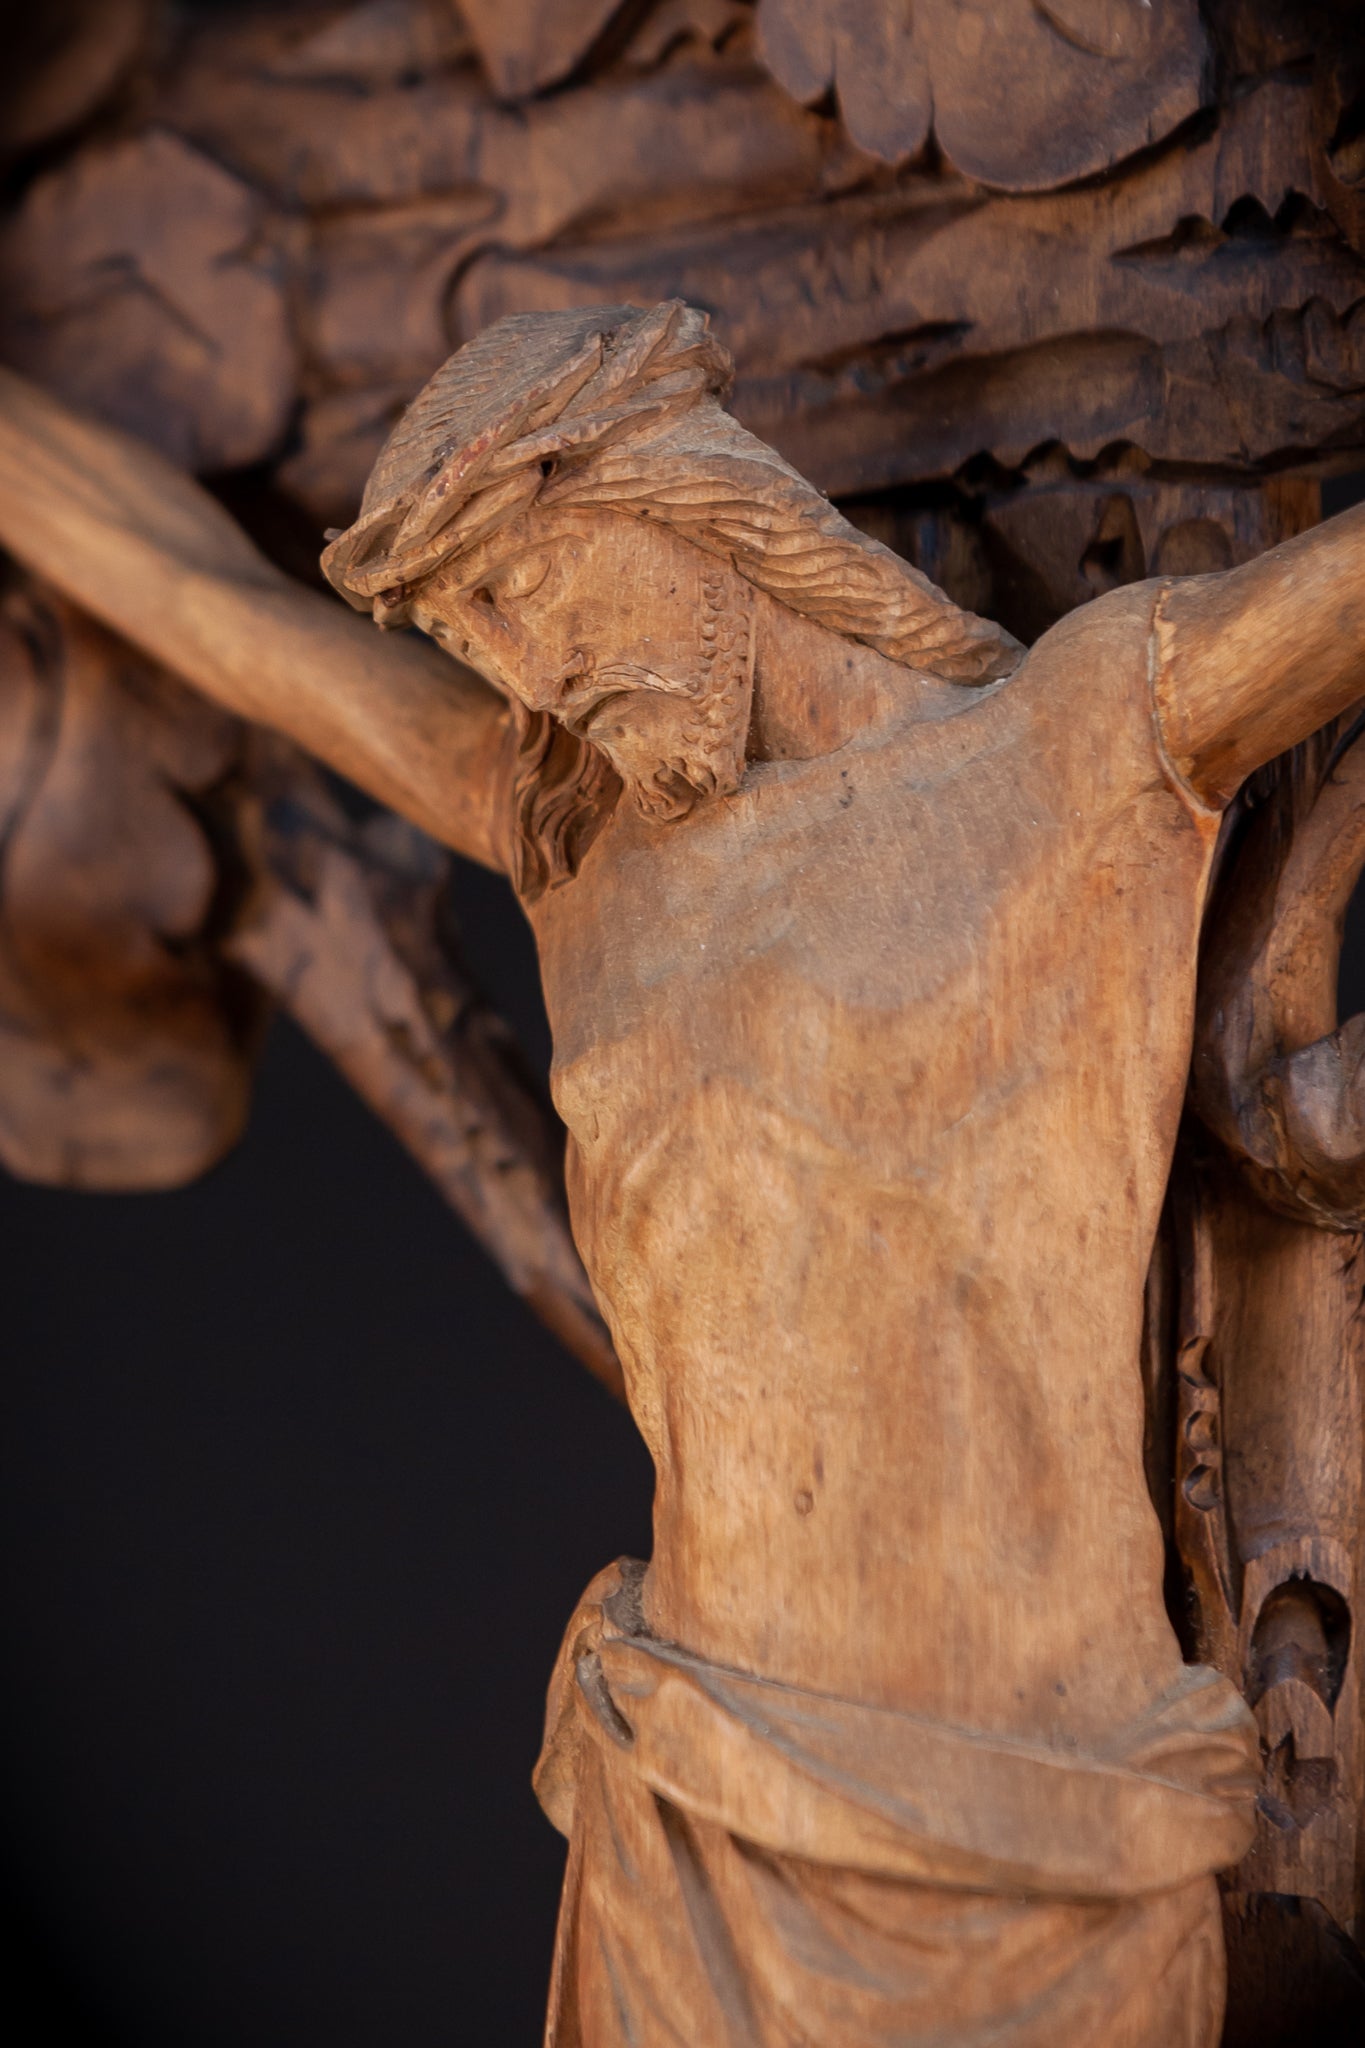 Wall Crucifix | Antique Wooden Church Cross 30" / 76 cm